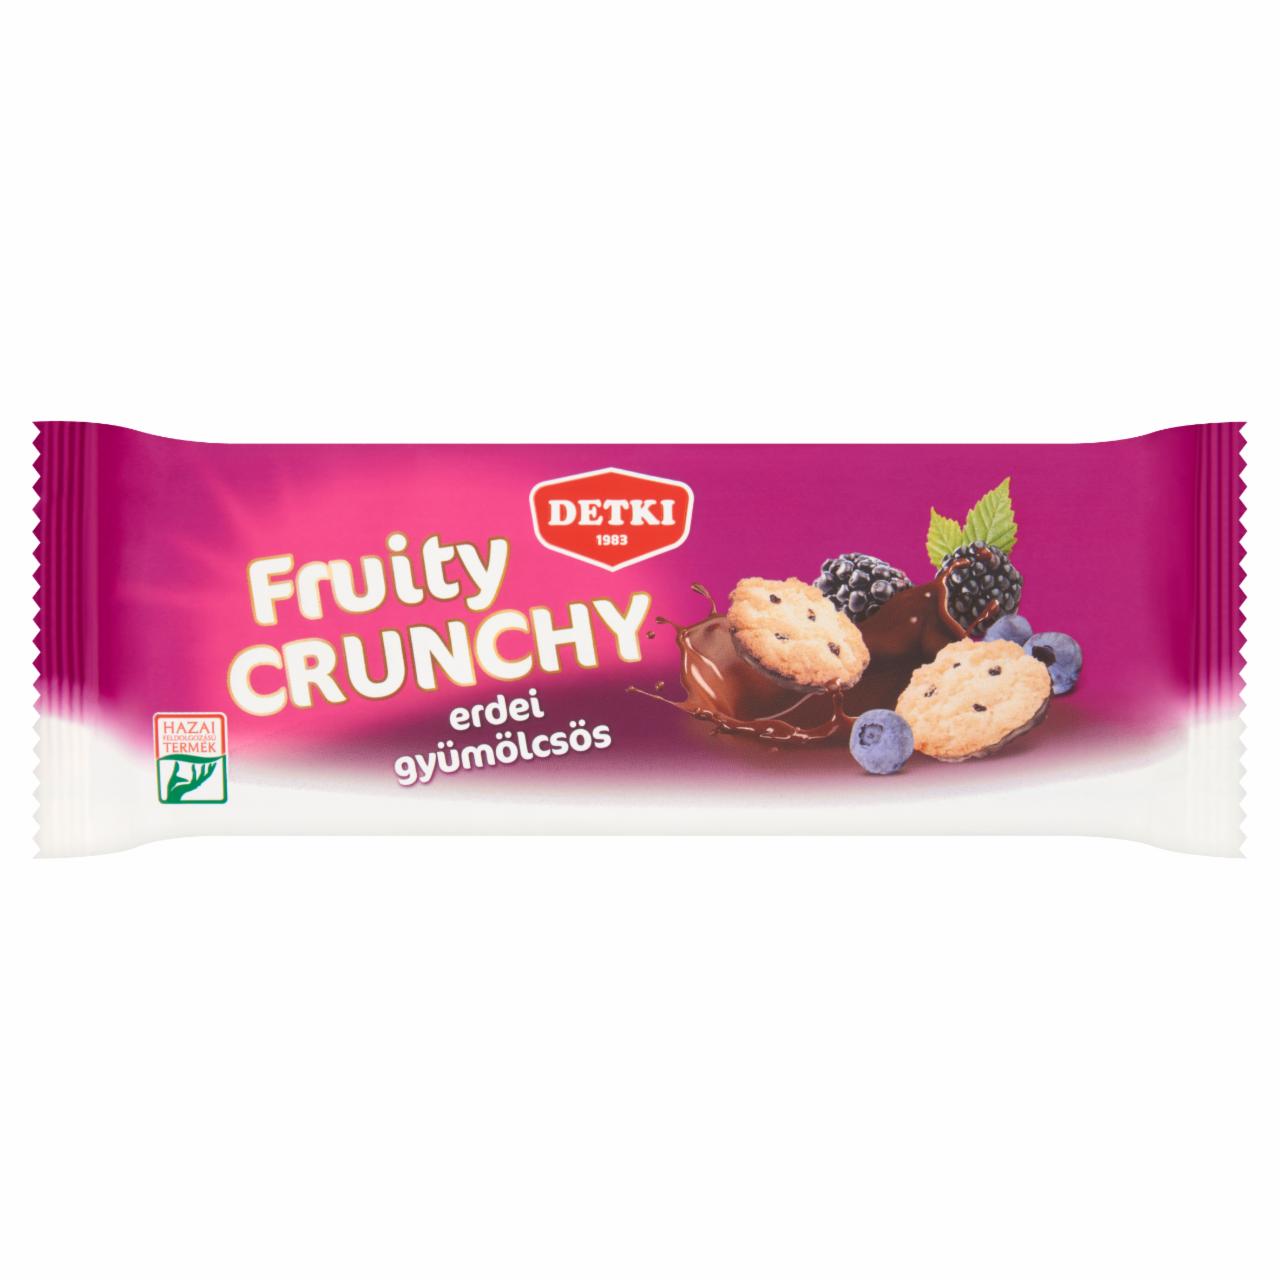 Képek - Detki Fruity Crunchy erdei gyümölcsös teasütemény kakaós étbevonómasszával félig mártva 150 g